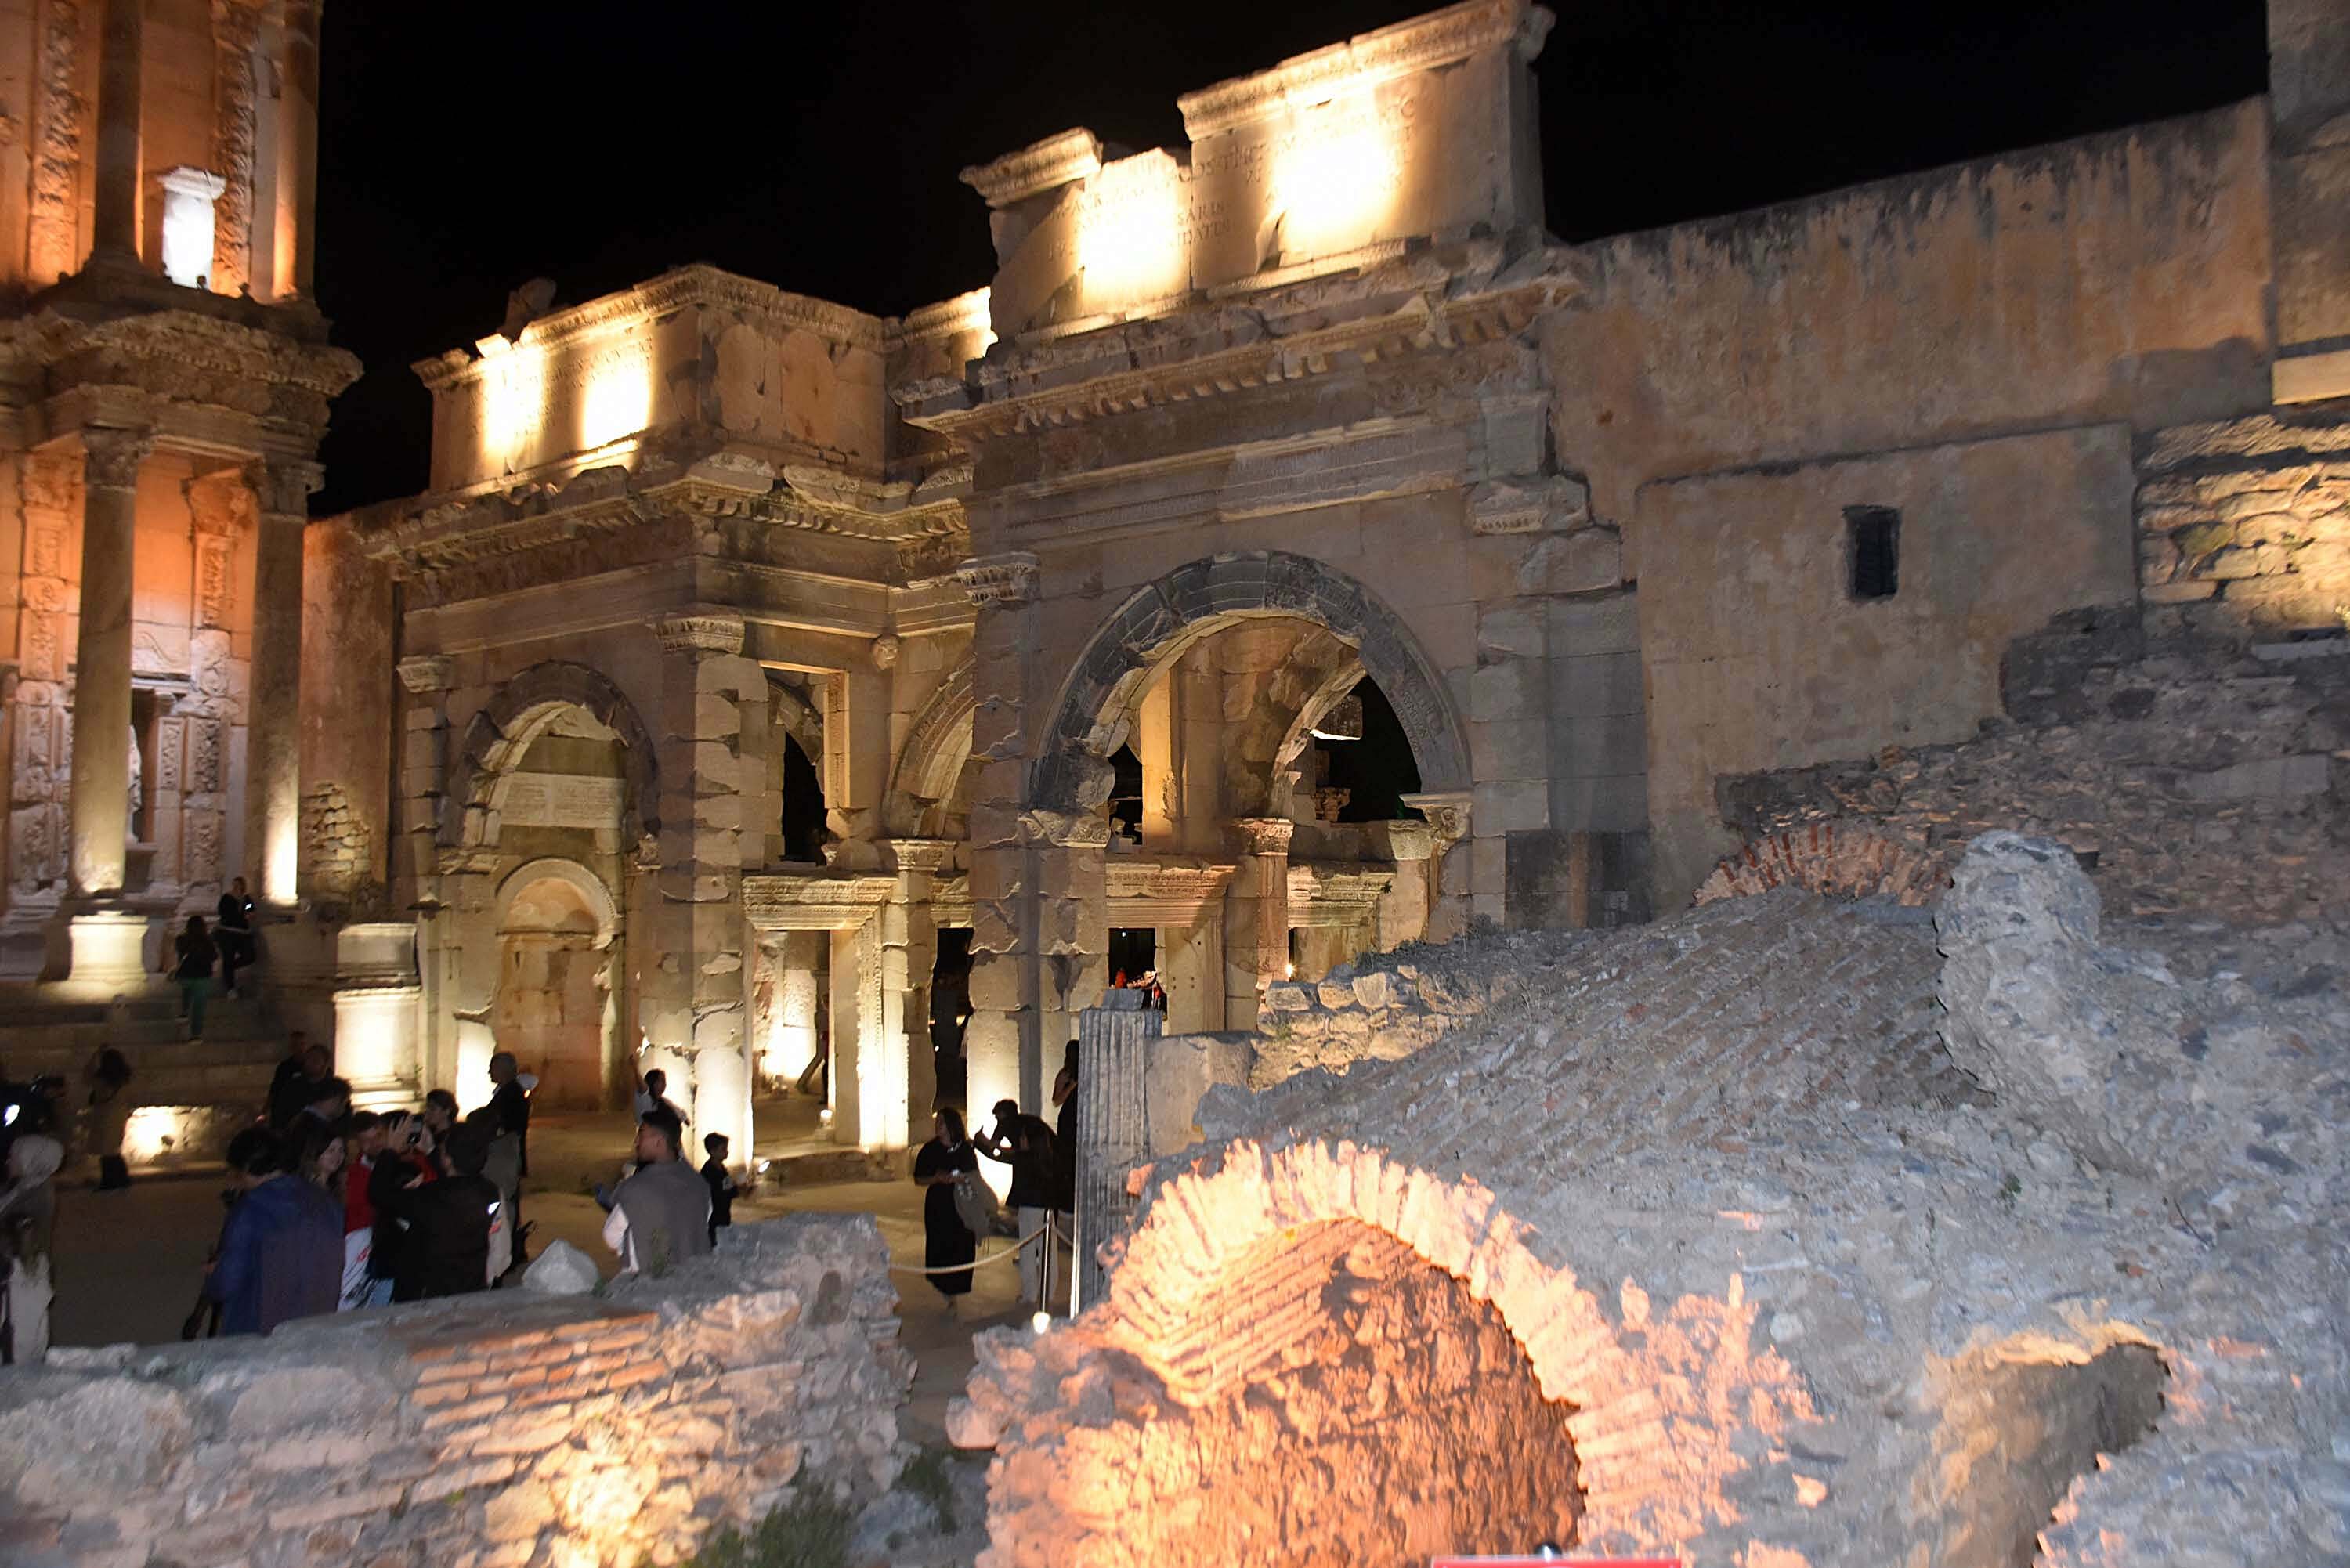 Efes Antik Kenti'nde gece müzeciliği dönemi!